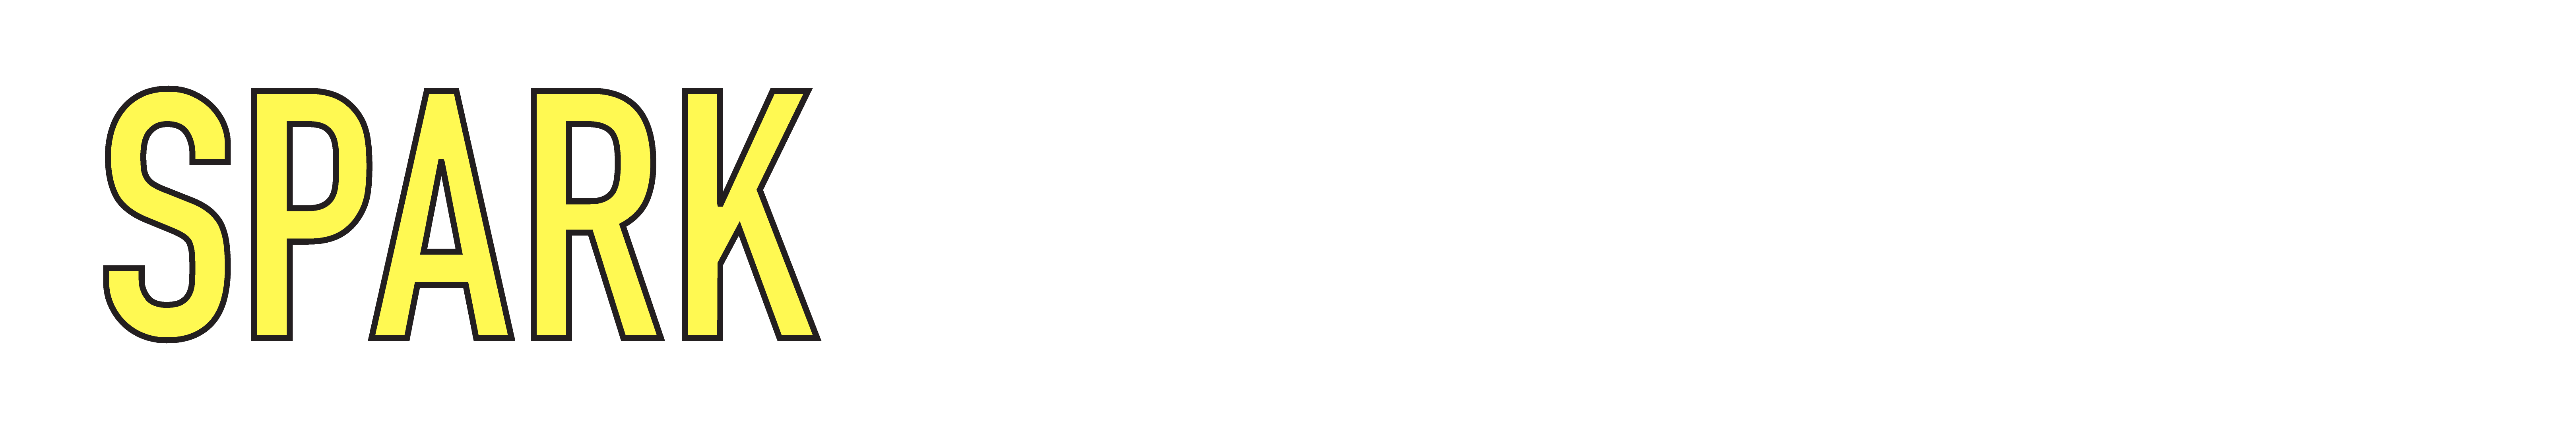 Spark Digital Media logo